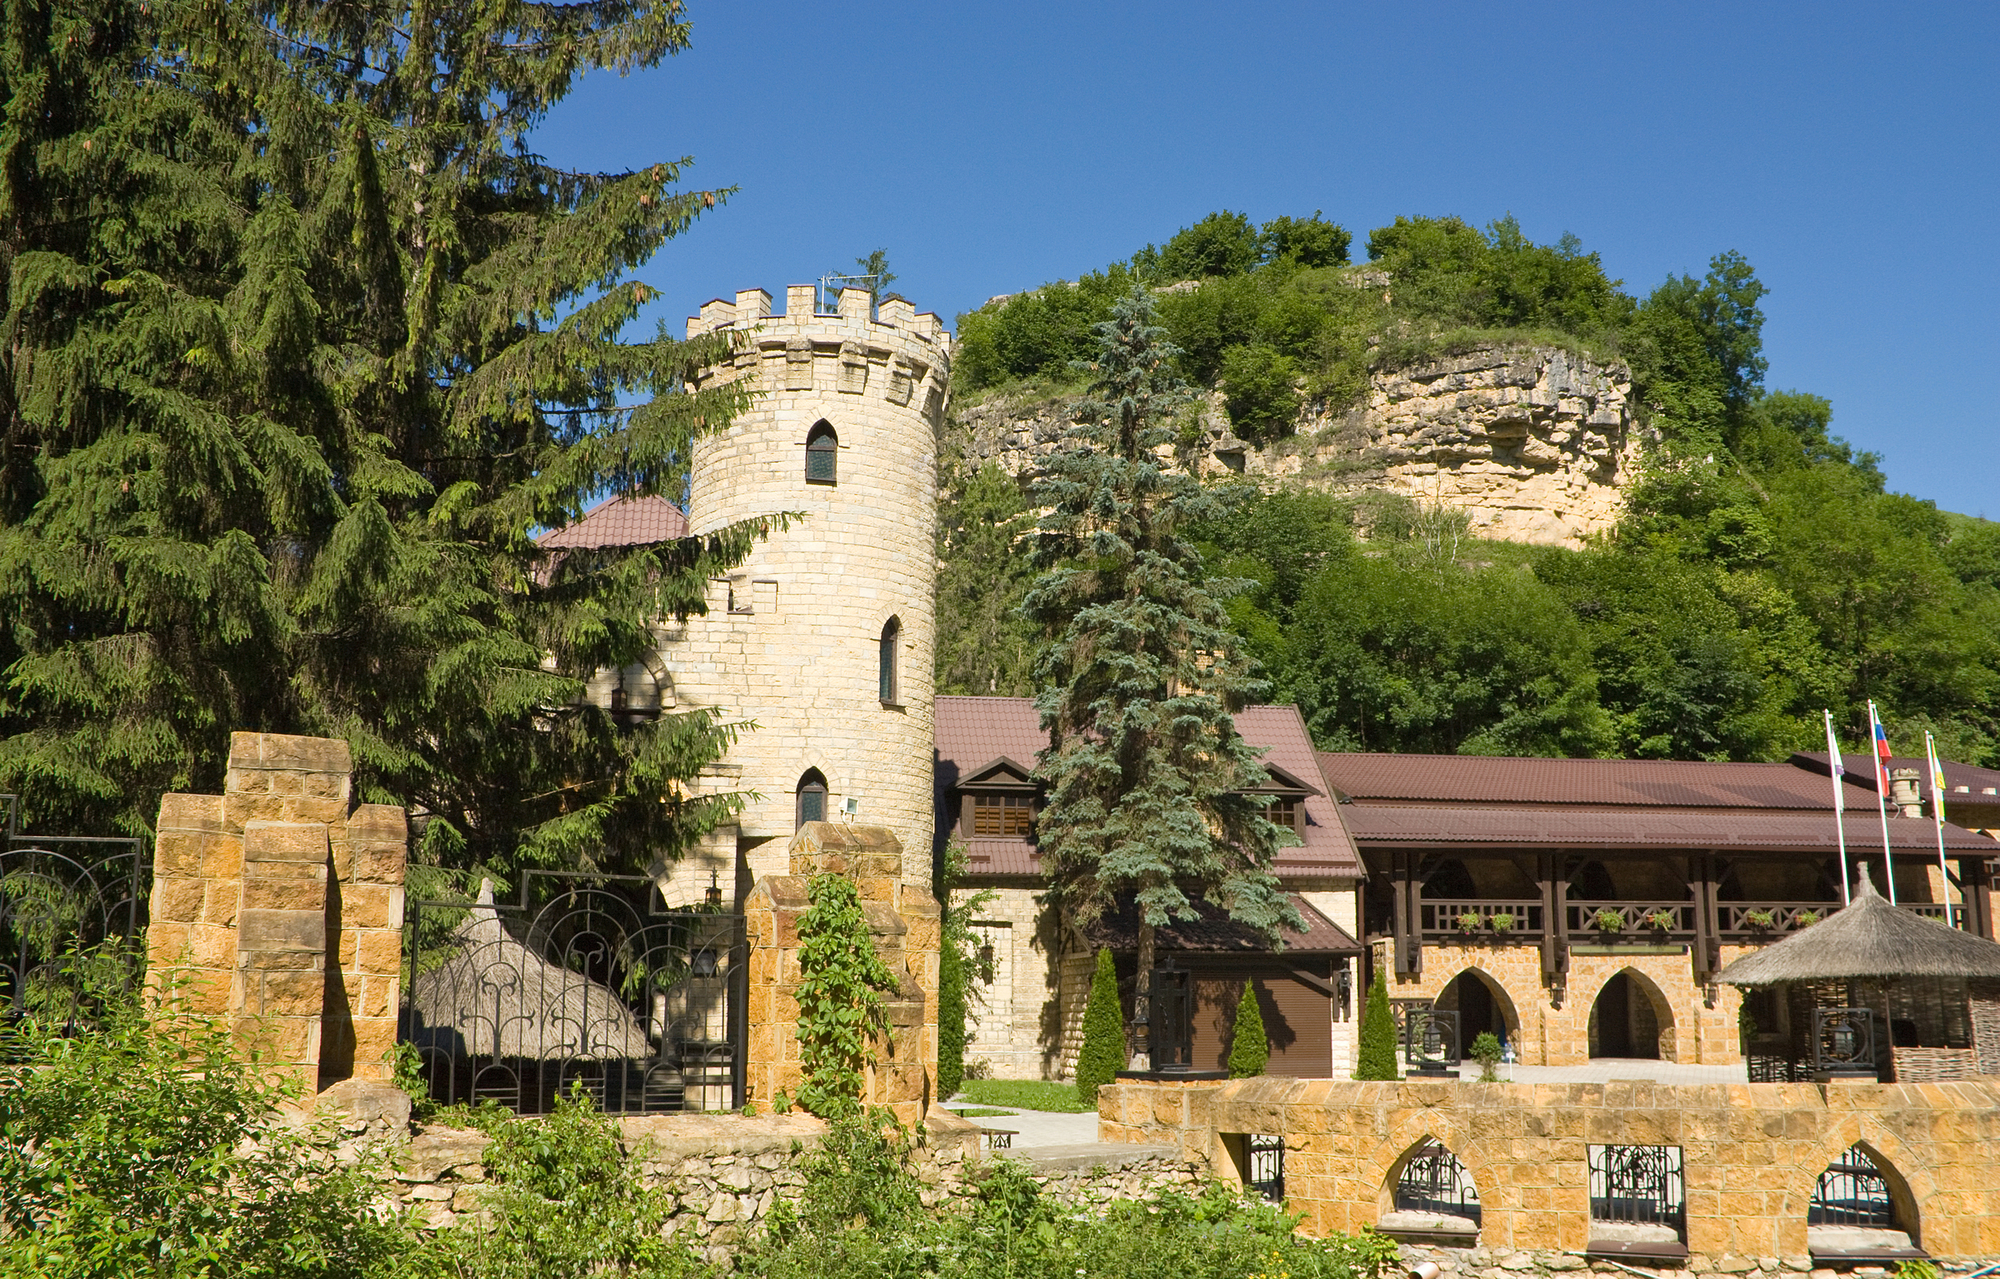 Обзорная экскурсия по Кисловодску «Лермонтовская скала и Замок коварства и любви»